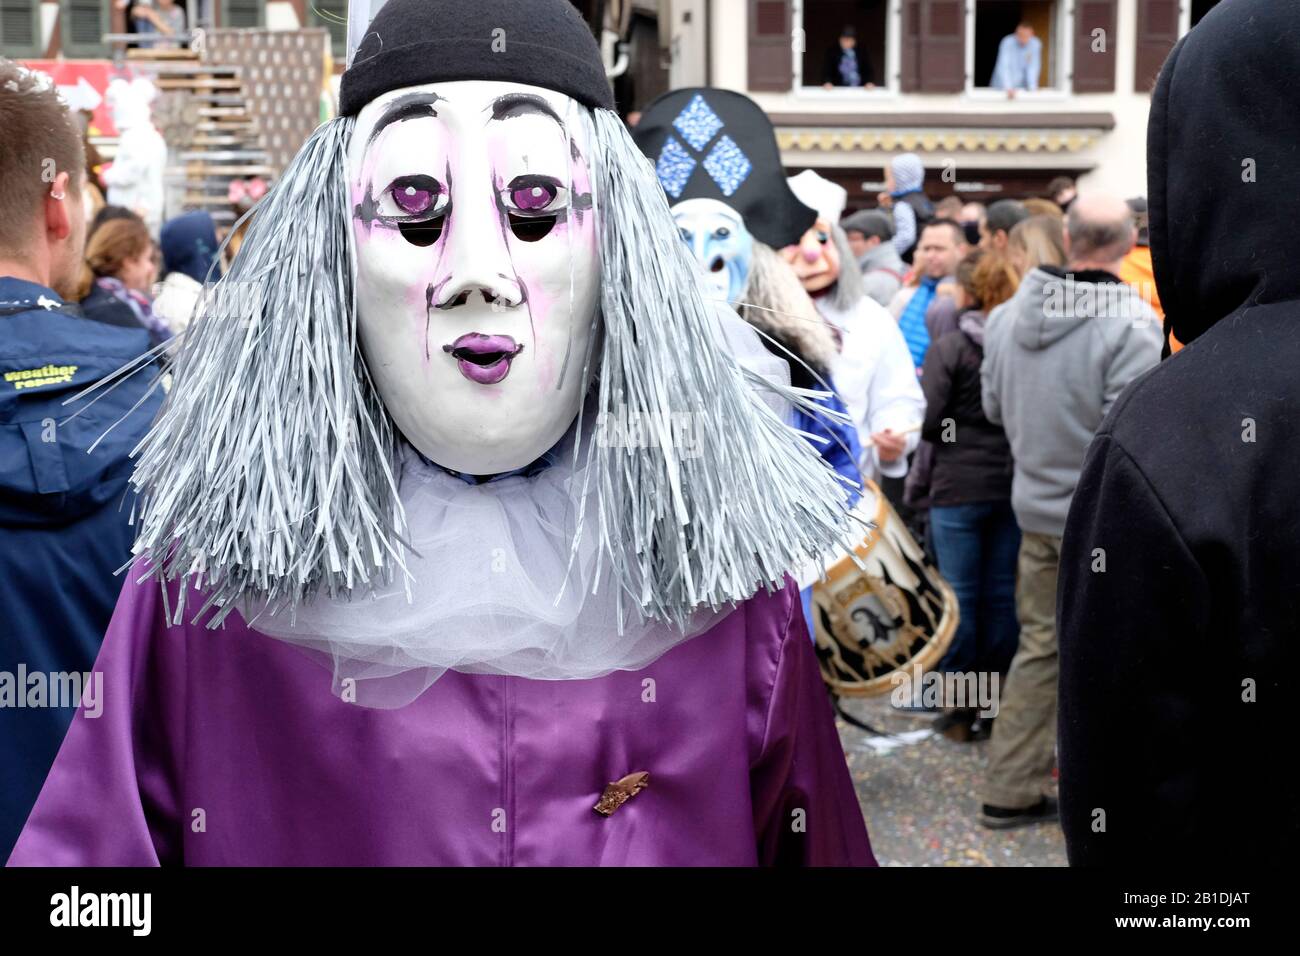 À Bâle fasnacht (carnaval), les participants cachent leur véritable identité sous un masque. Banque D'Images